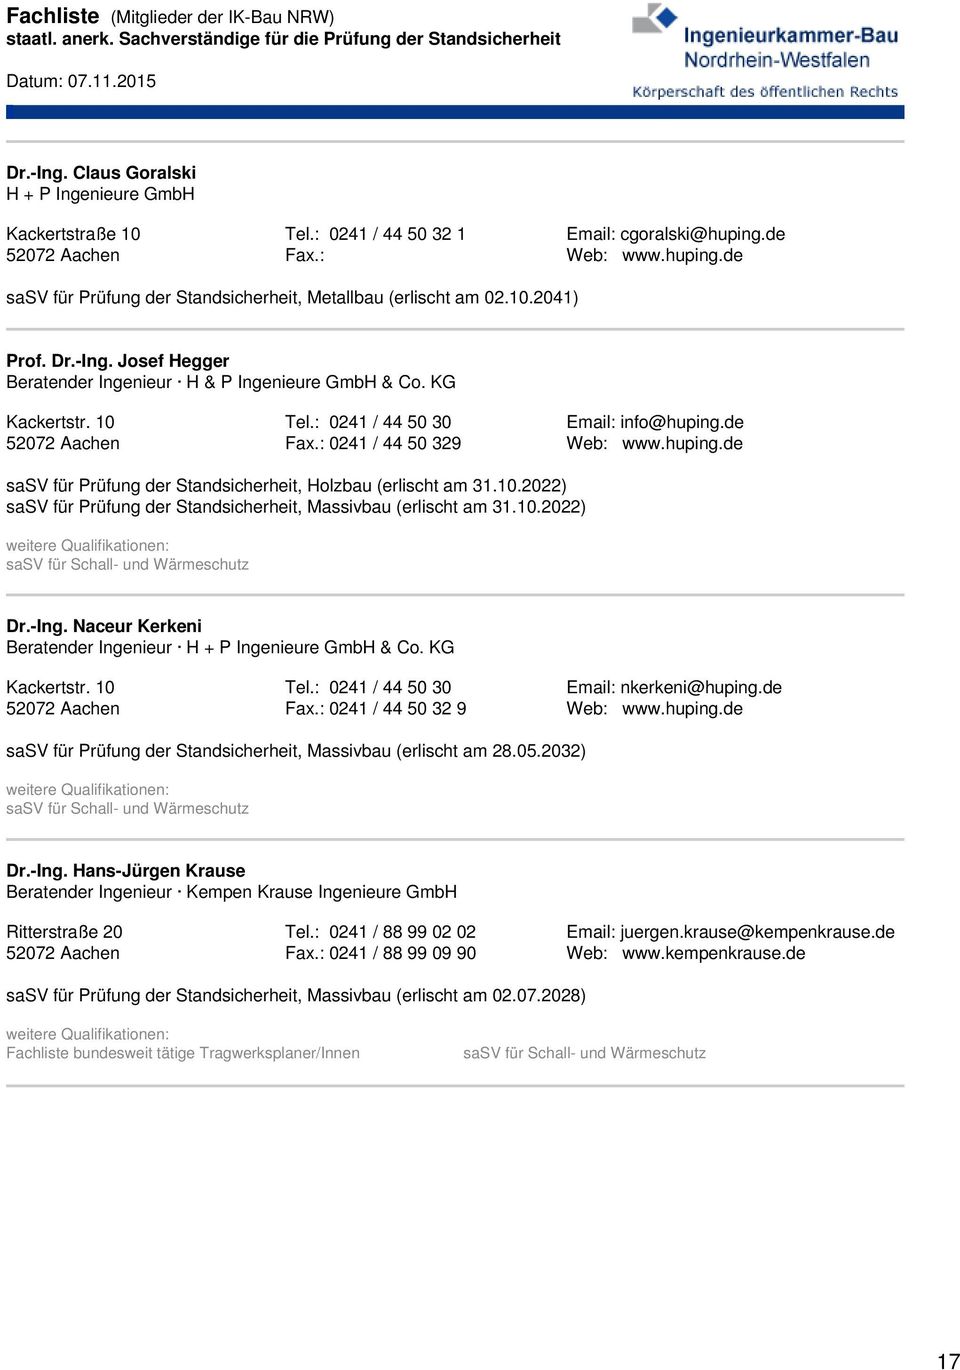 10 52072 Aachen Tel.: 0241 / 44 50 30 Fax.: 0241 / 44 50 329 Email: info@huping.de Web: www.huping.de sasv für Prüfung der Standsicherheit, Holzbau (erlischt am 31.10.2022) sasv für Prüfung der Standsicherheit, Massivbau (erlischt am 31.